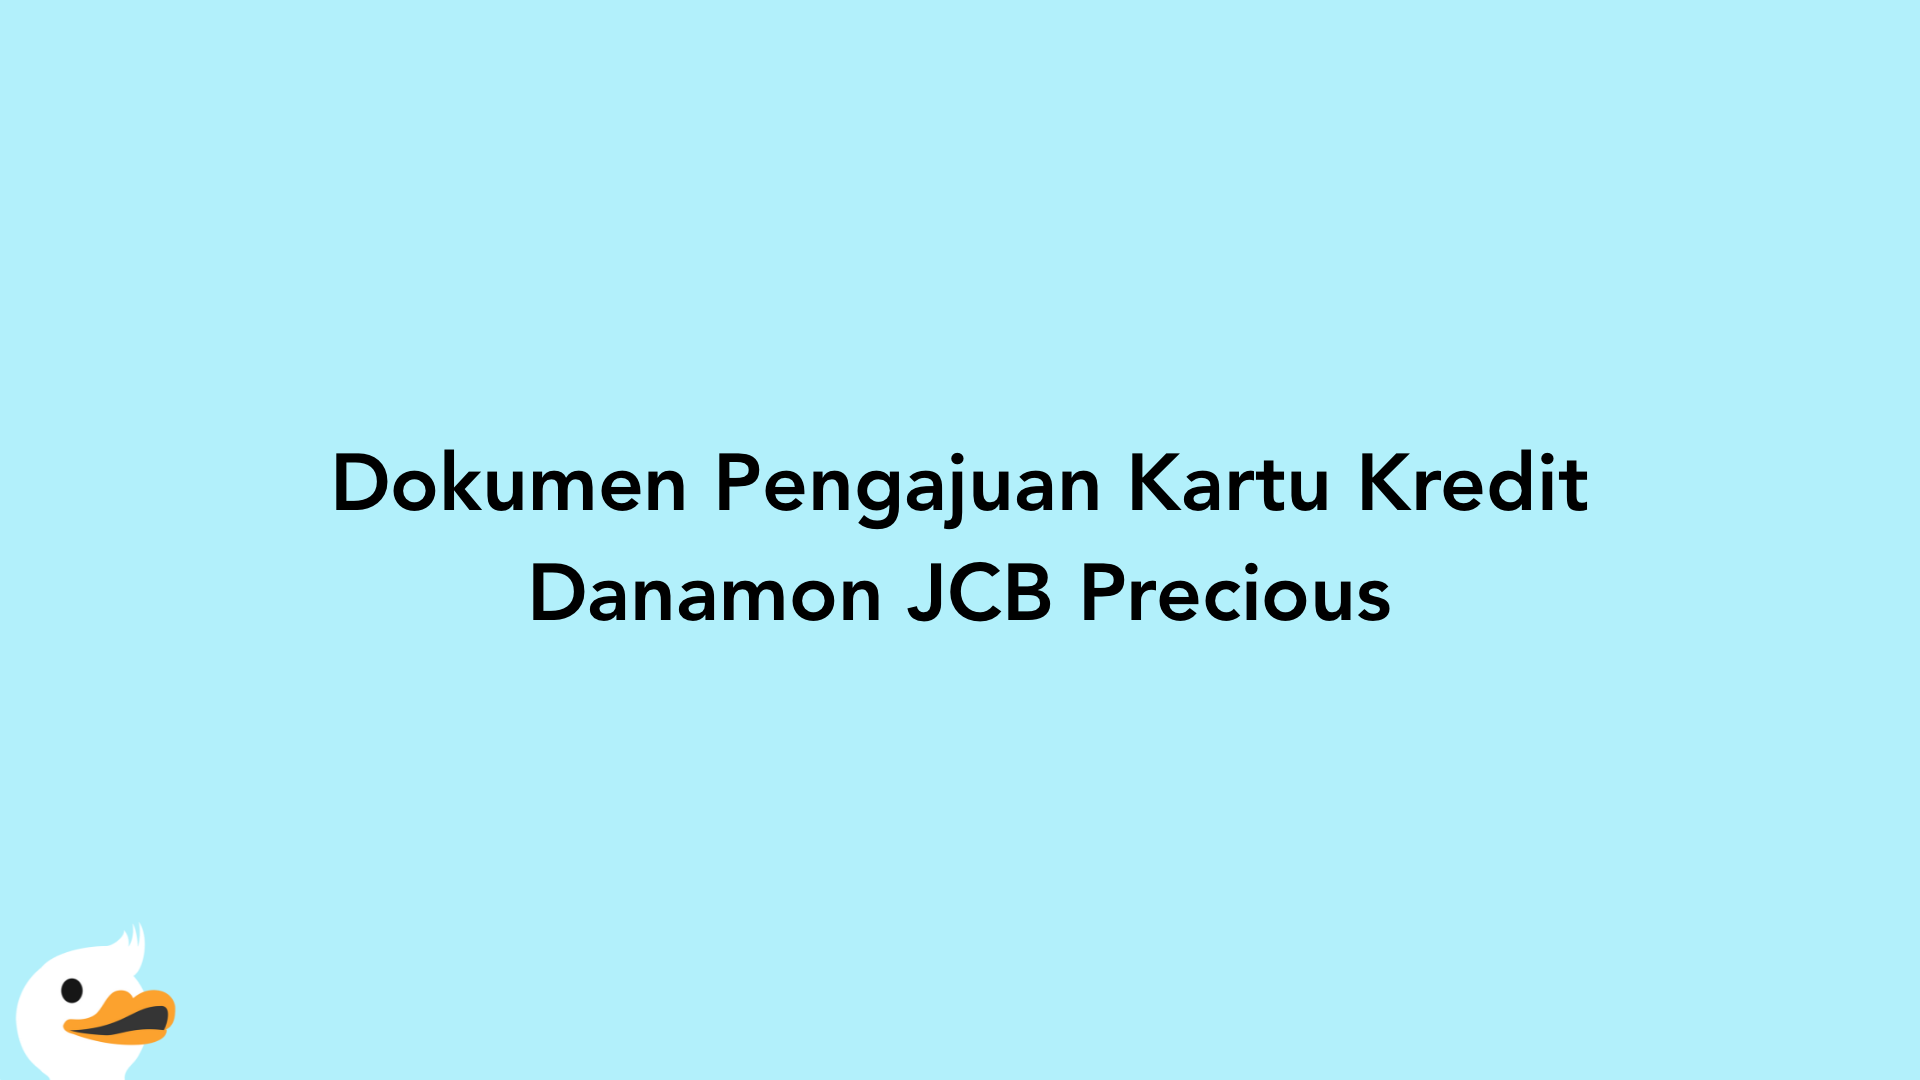 Dokumen Pengajuan Kartu Kredit Danamon JCB Precious